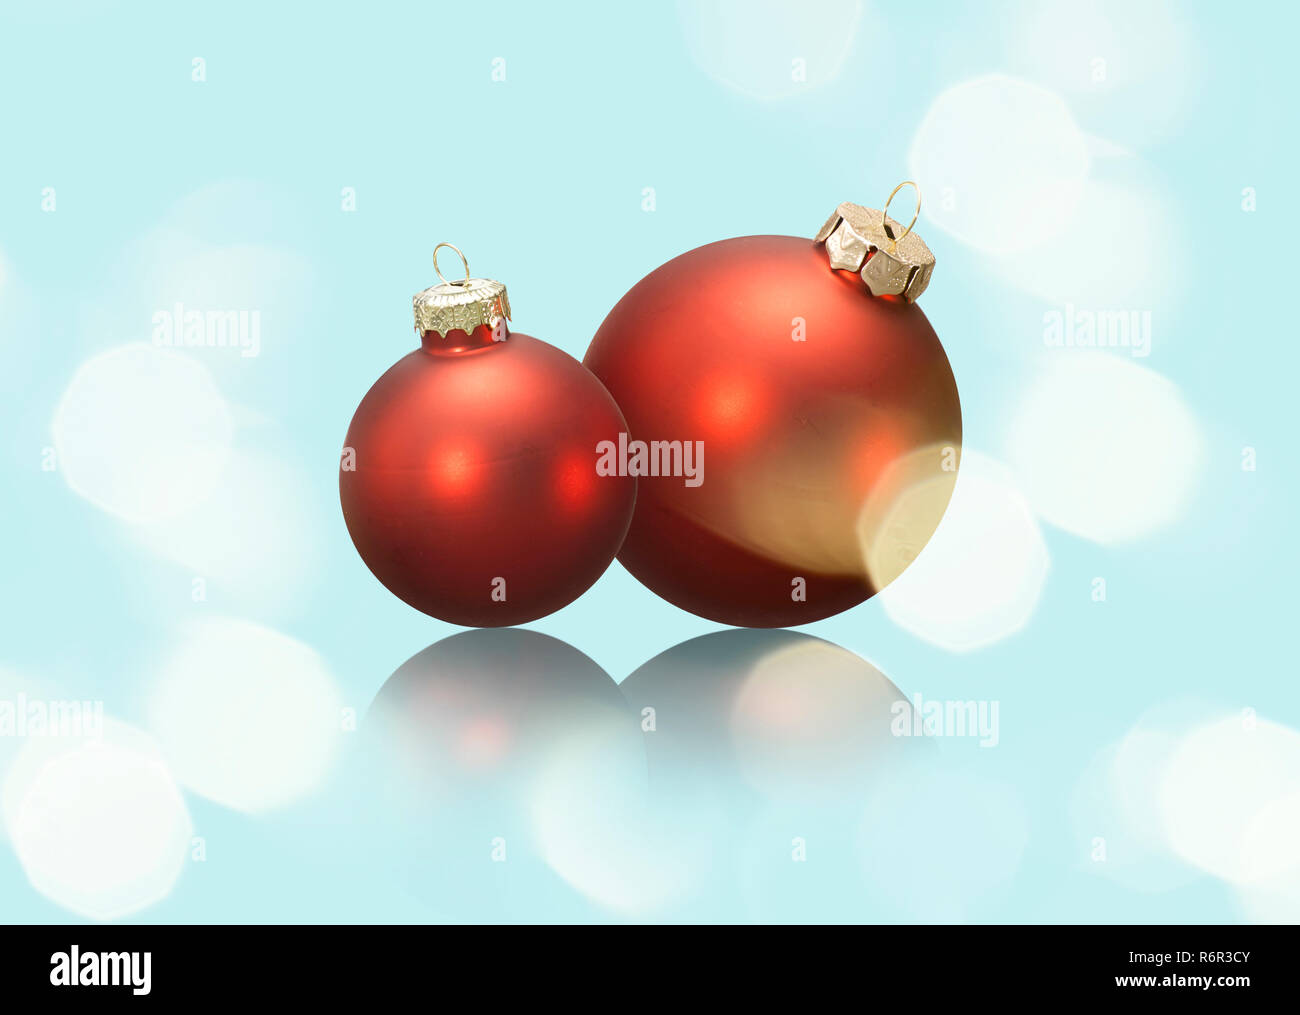 Zwei rote Weihnachtskugeln auf hellblauem Grund mit Spiegelung. Stock Photo